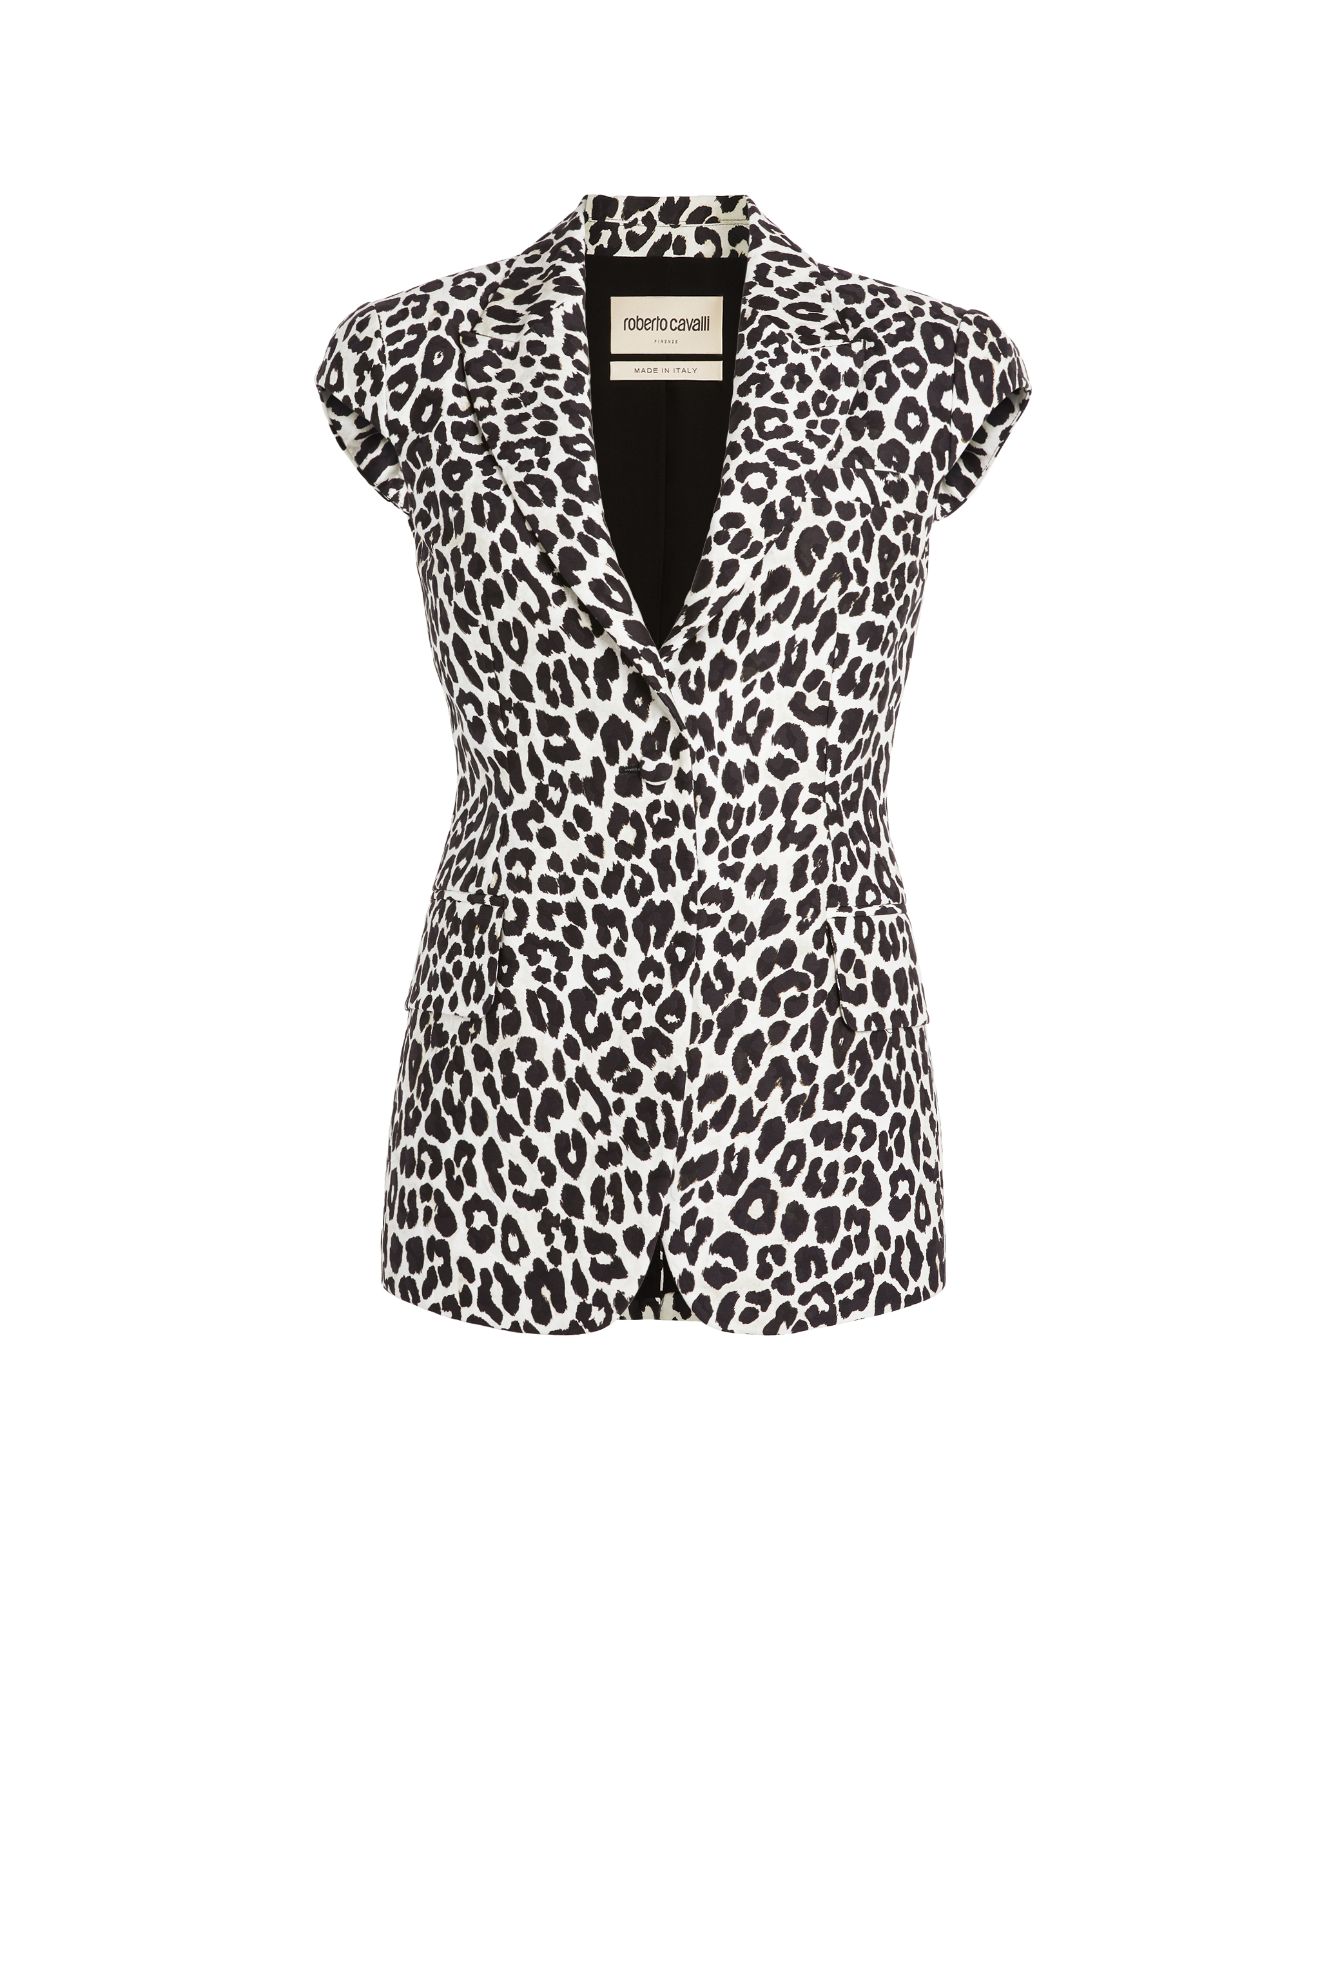 snow leopard print dress